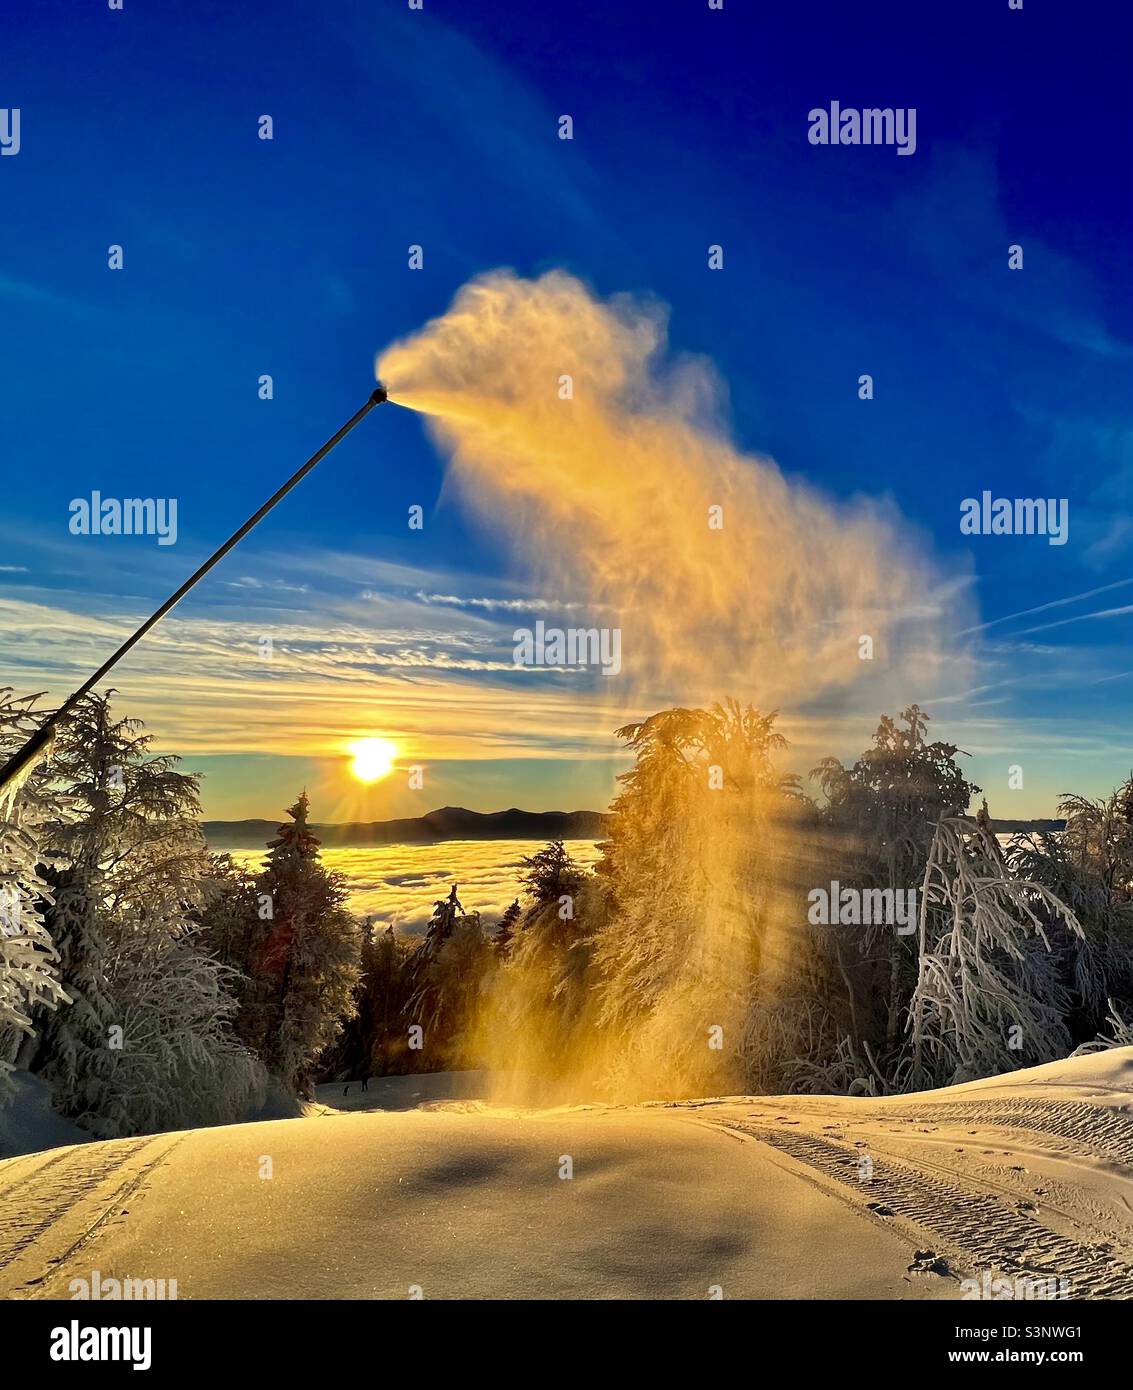 Schneekanone im Sonnenaufgang Foto de stock